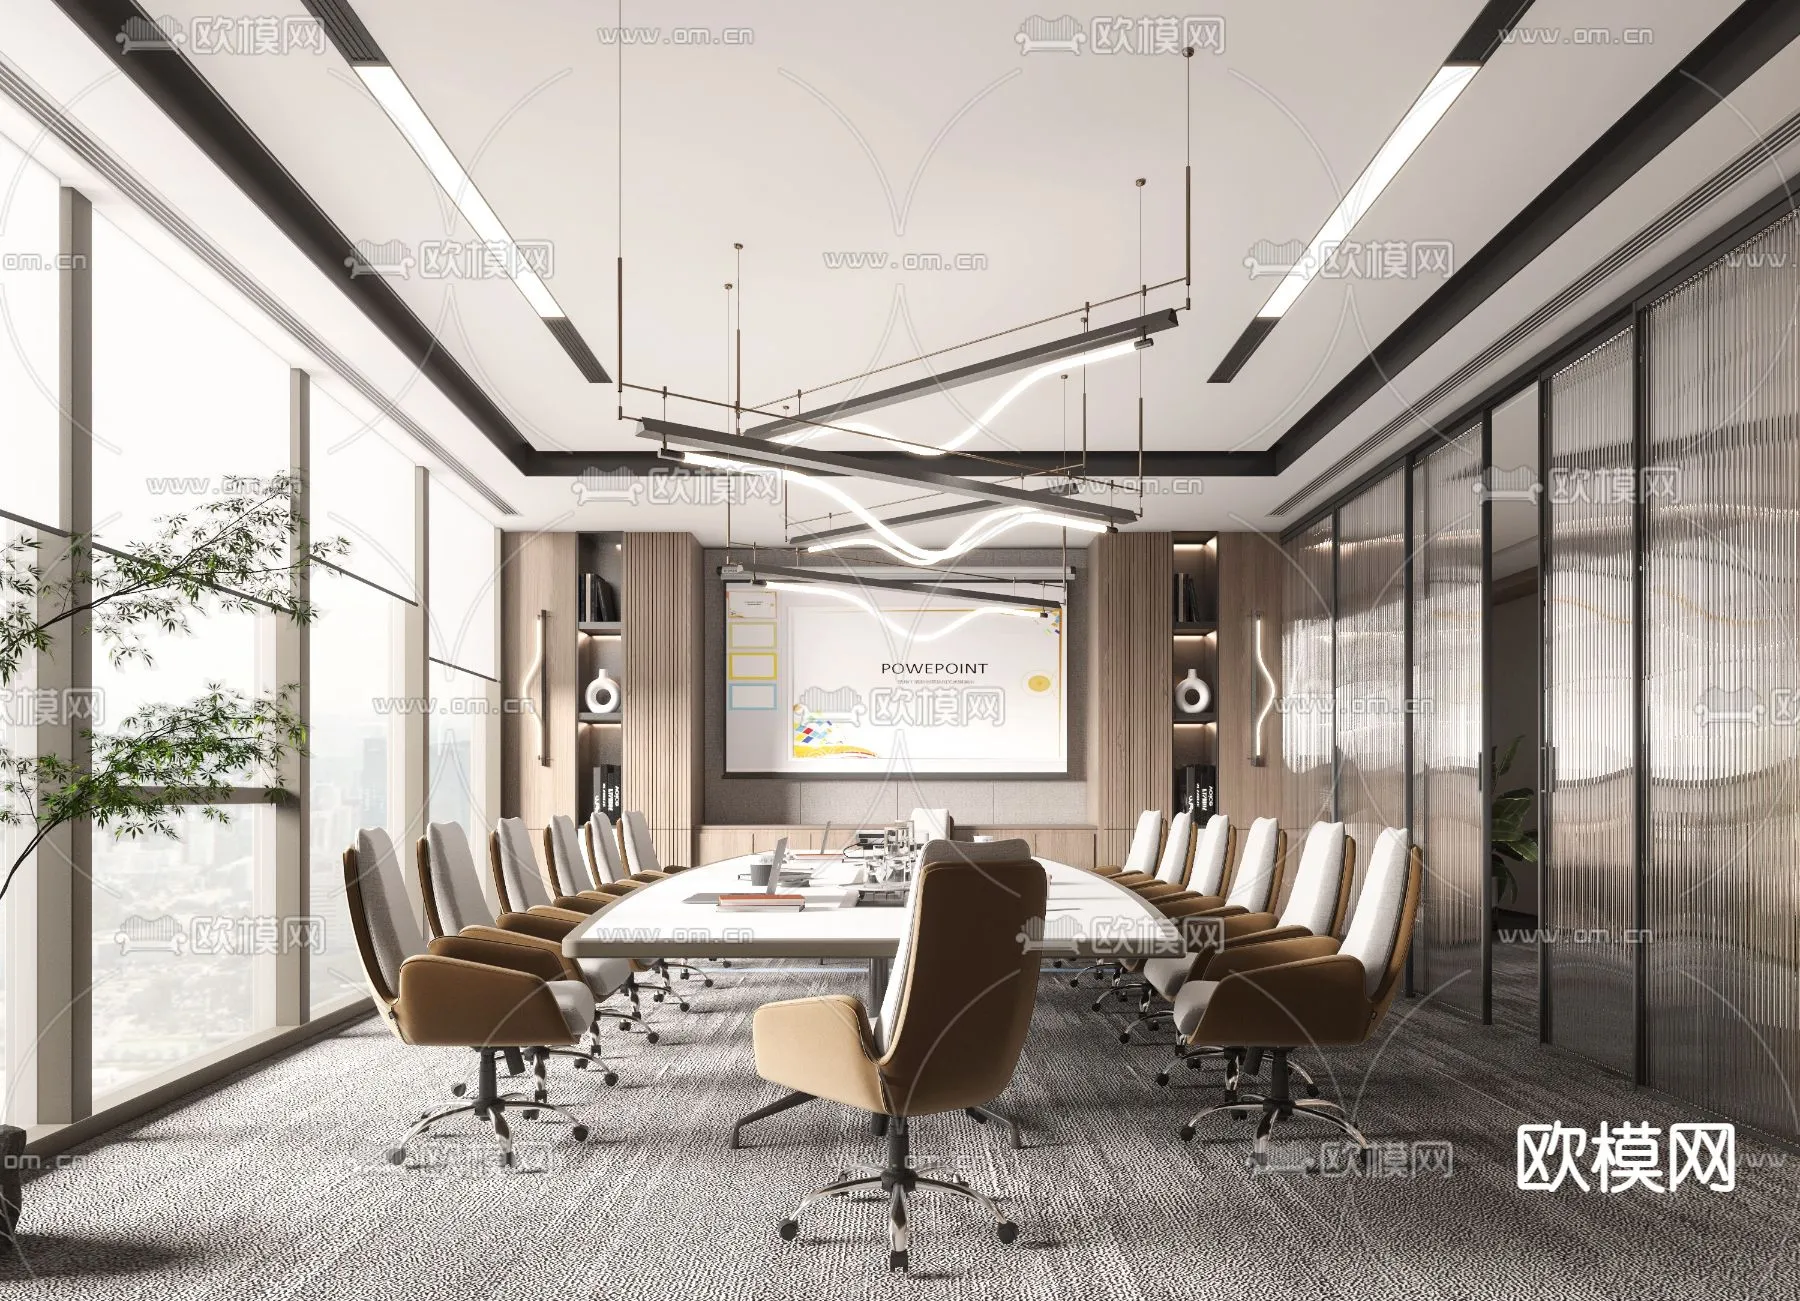 Meeting Room 3D Scenes – 1501